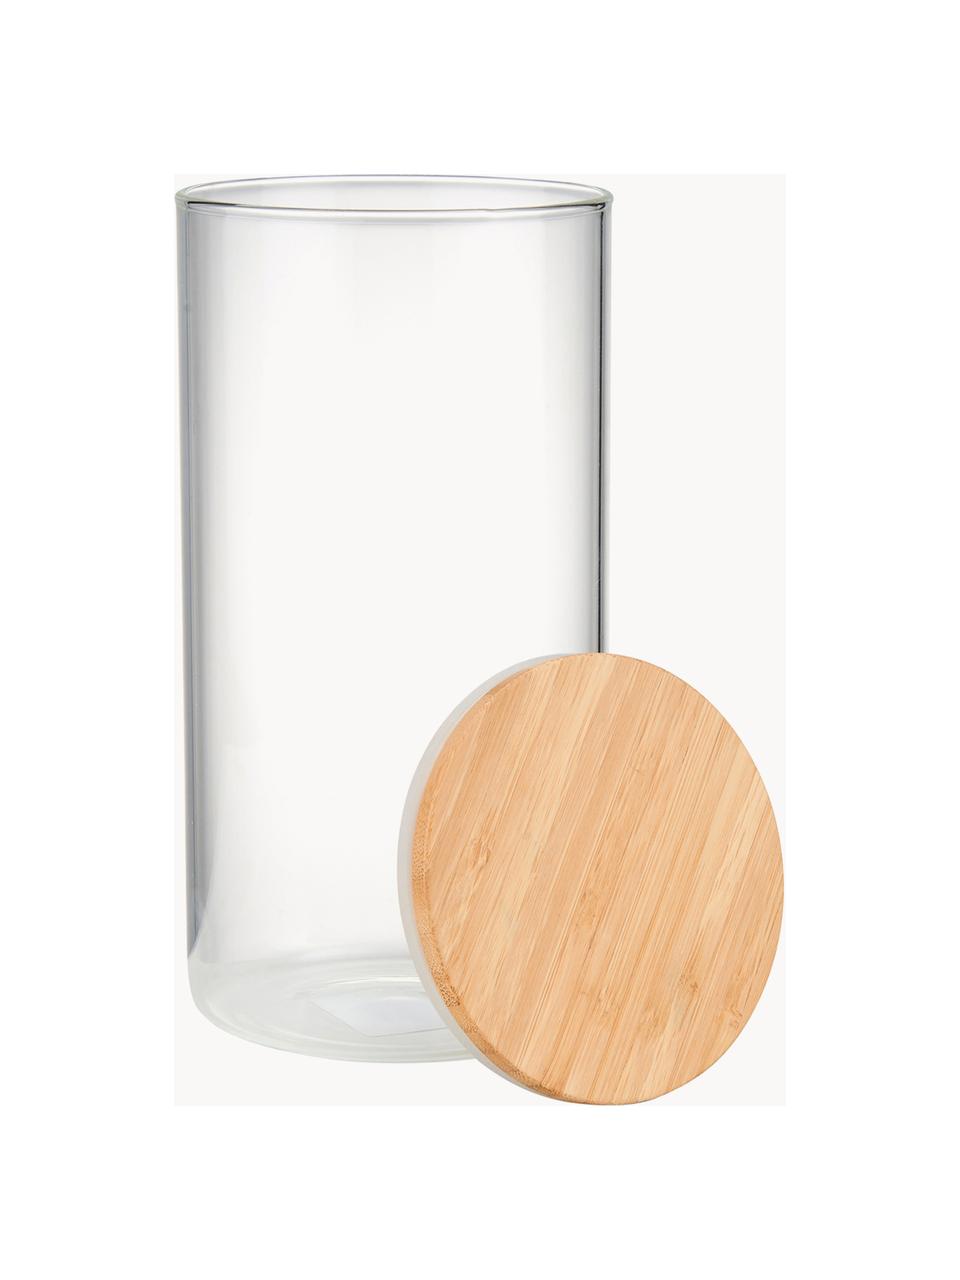 Dóza s víčkem z bukového dřeva Woodlock, Transparentní, světlé dřevo, Ø 11 cm, V 28 cm, 2,3 l